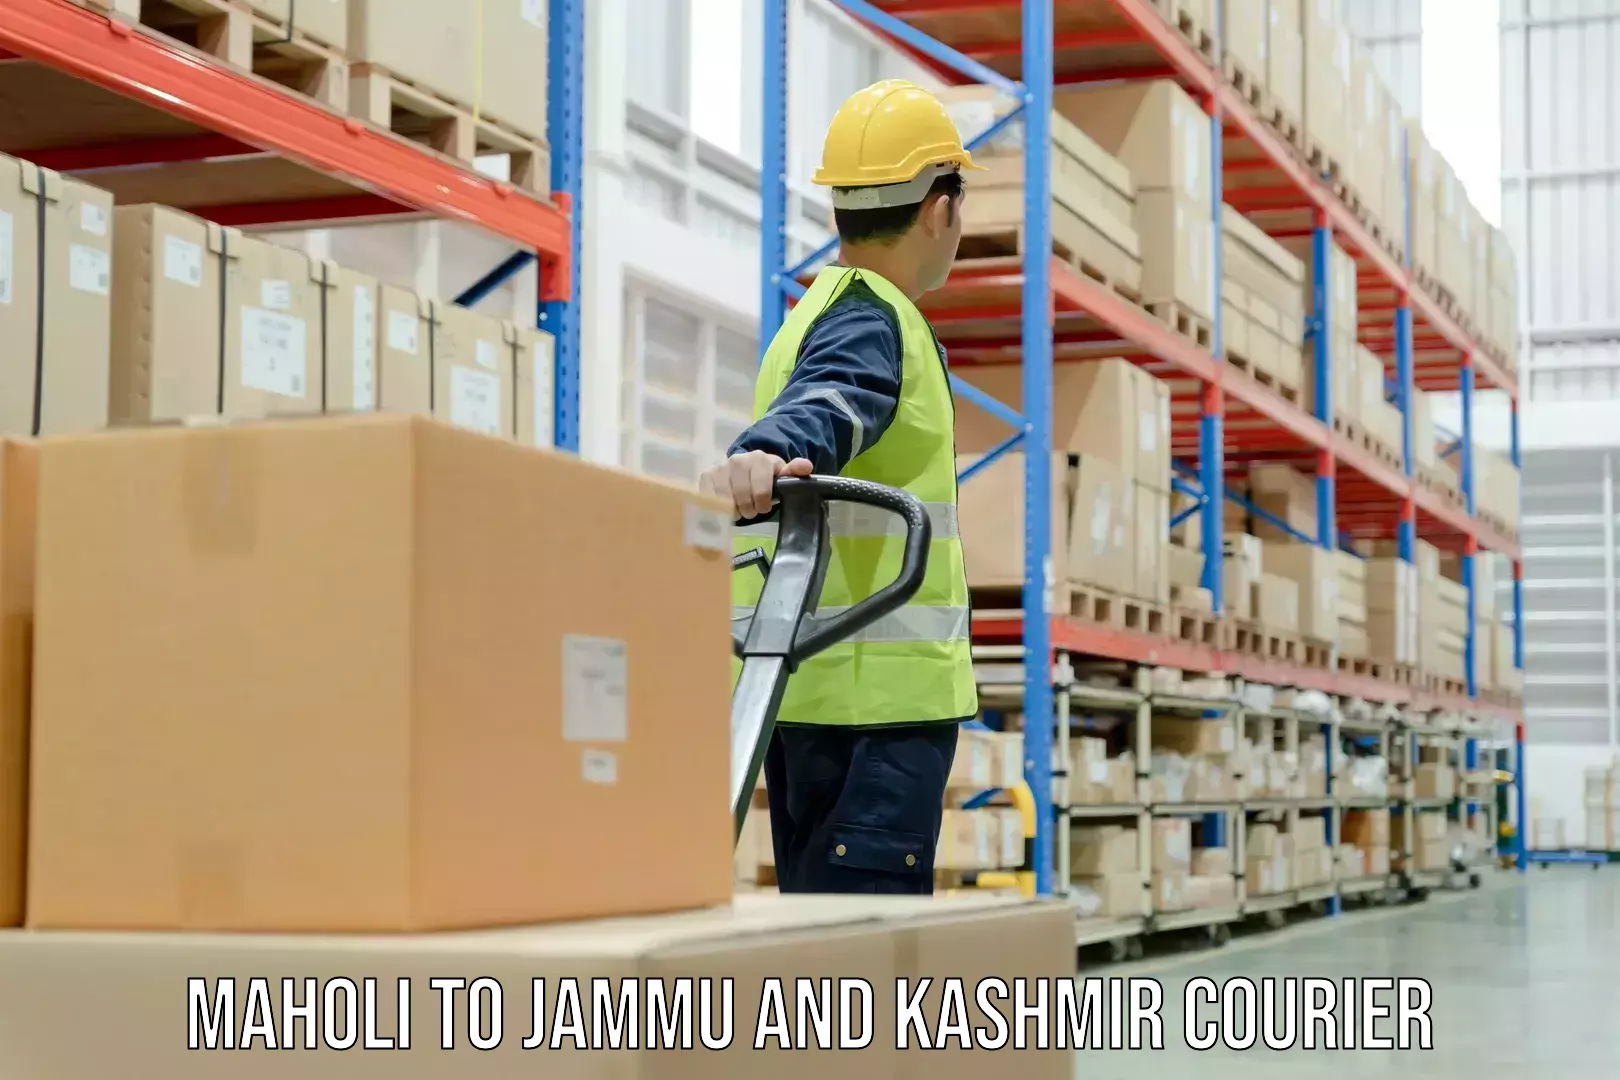 Logistics service provider Maholi to Jammu and Kashmir